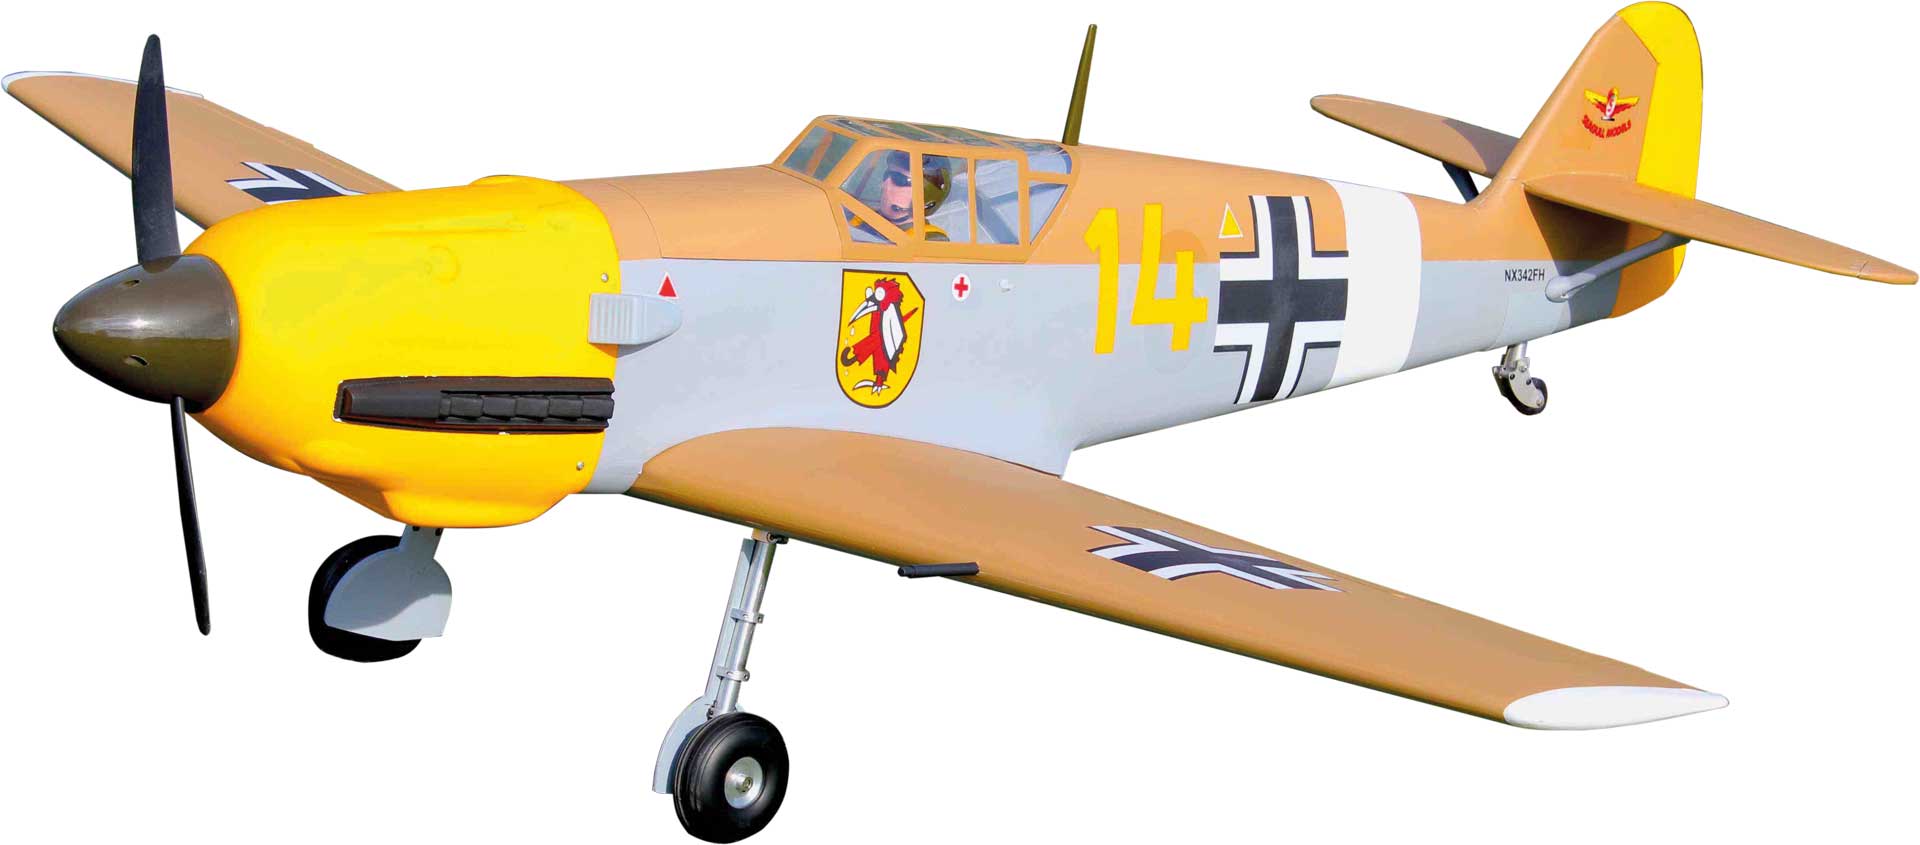 Seagull Models ( SG-Models ) Messerschmitt Bf-109 (ME-109) 63,9" WITHOUT retractable landing gear ARF